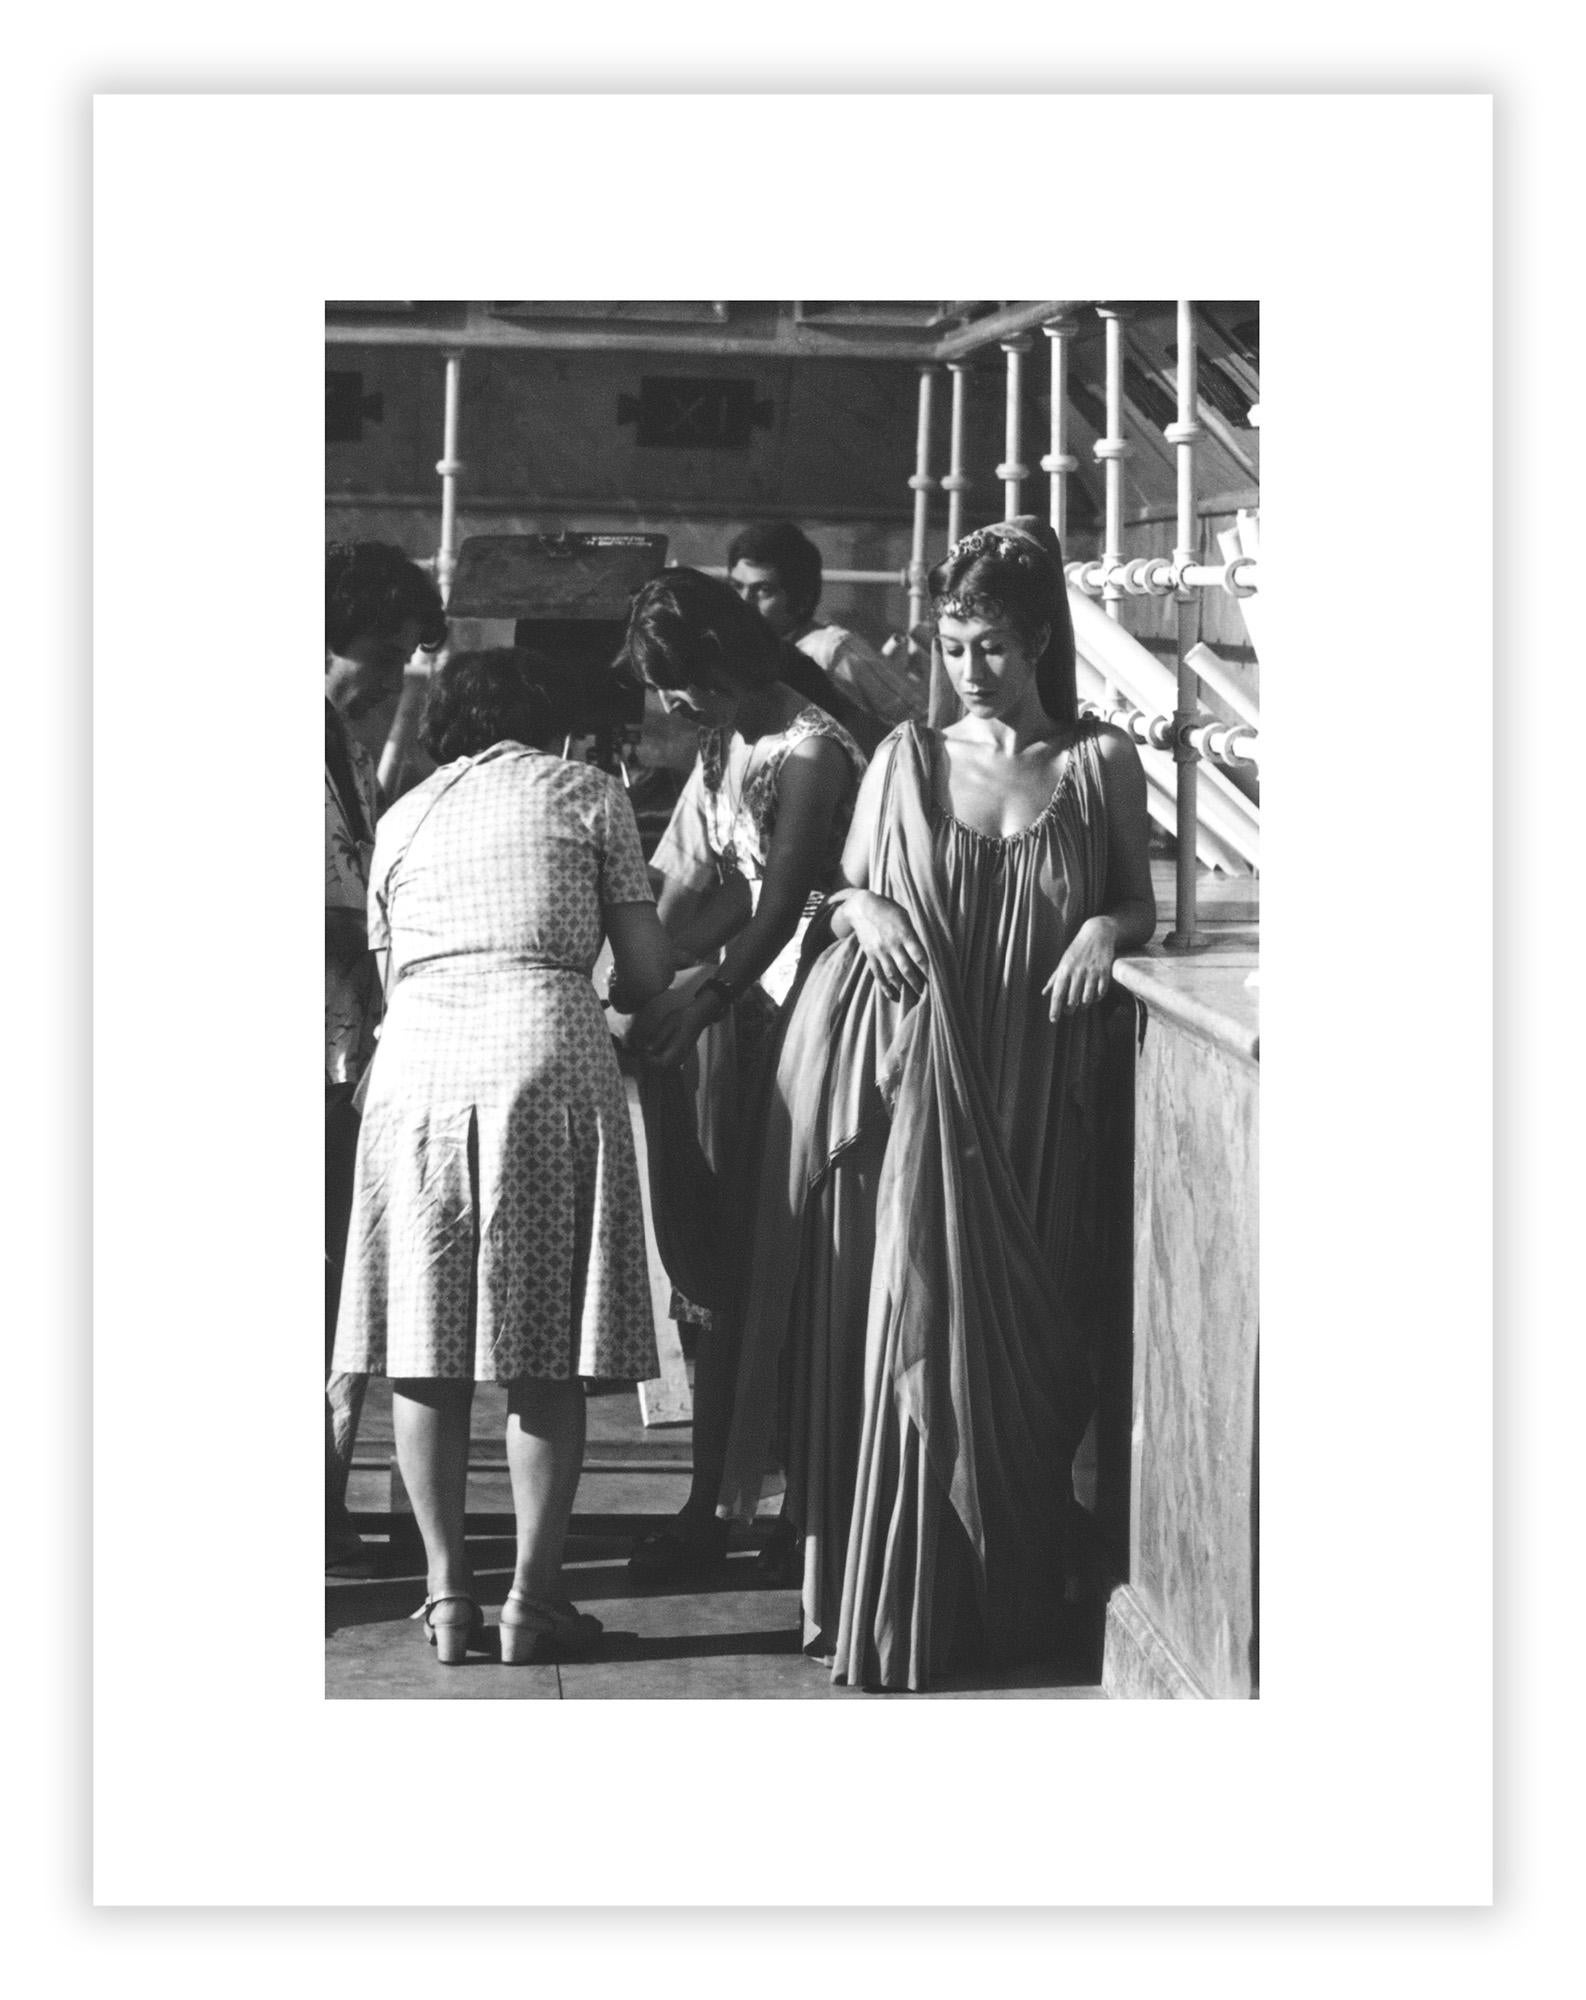 Century Guild présente une sélection de photographies inédites prises sur le plateau de Caligula en 1976 par le légendaire photographe italien Mario Tursi, connu pour son travail avec les réalisateurs italiens Pier Paolo Pasolini et Luchino Visconti